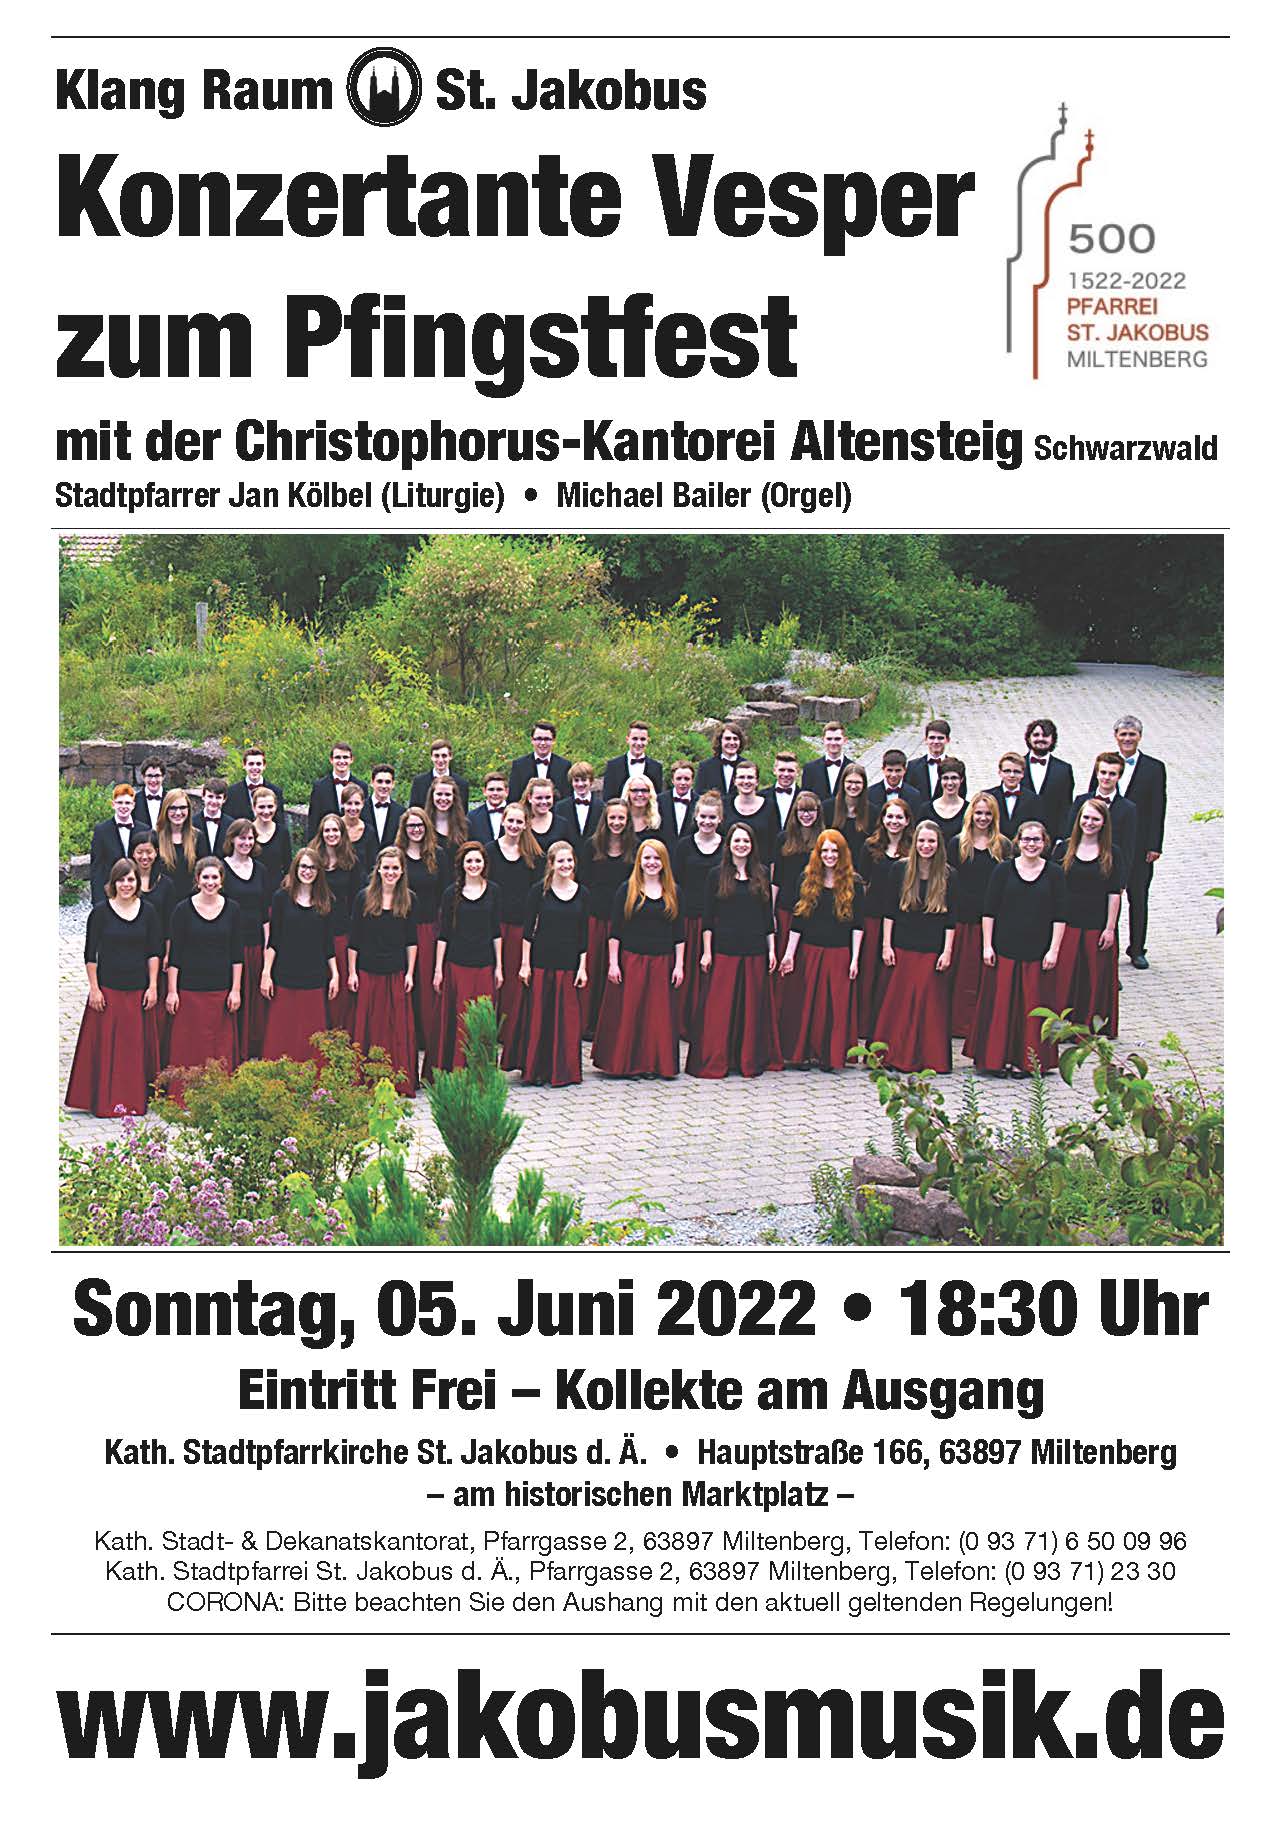 Konzertante Pfingstvesper mit der Christophorus-Kantorei Altensteig am 05. Juni 2022